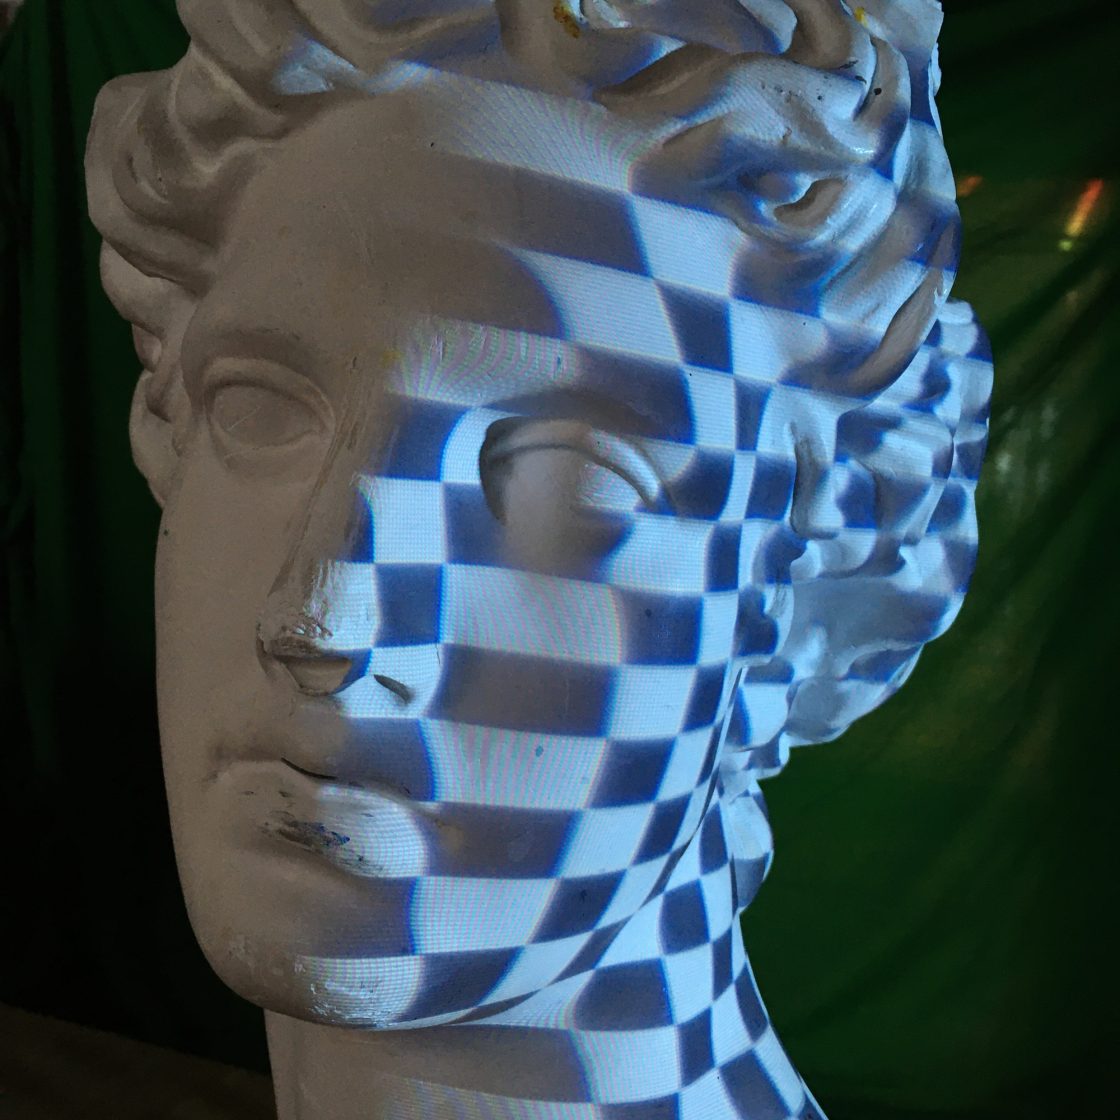 3D scan met blauwe projectievlakken